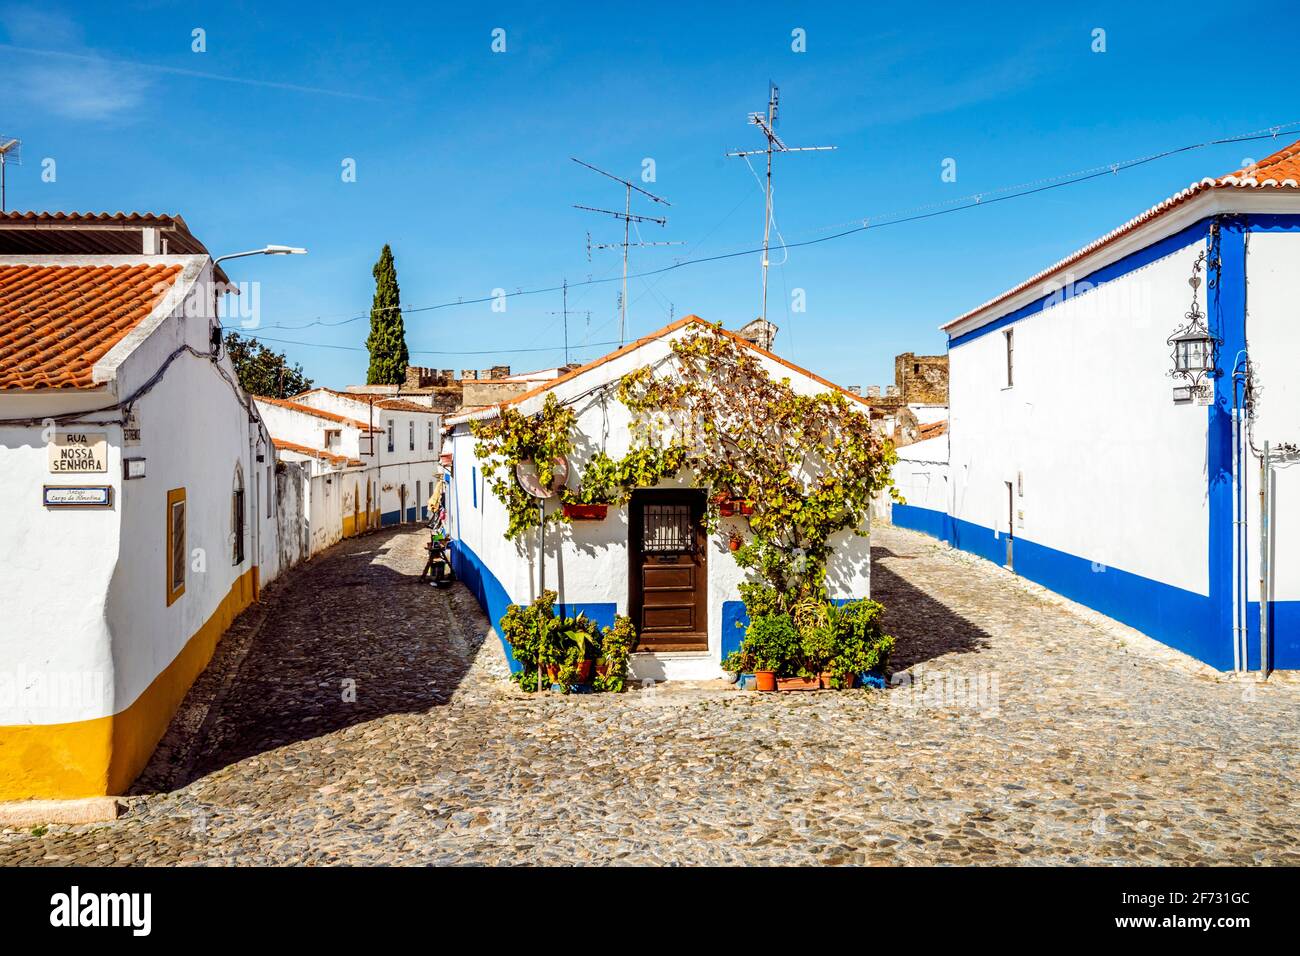 Affascinante architettura imbiancata di bianco della storica Vila Vicosa, Alentejo, Portogallo Foto Stock